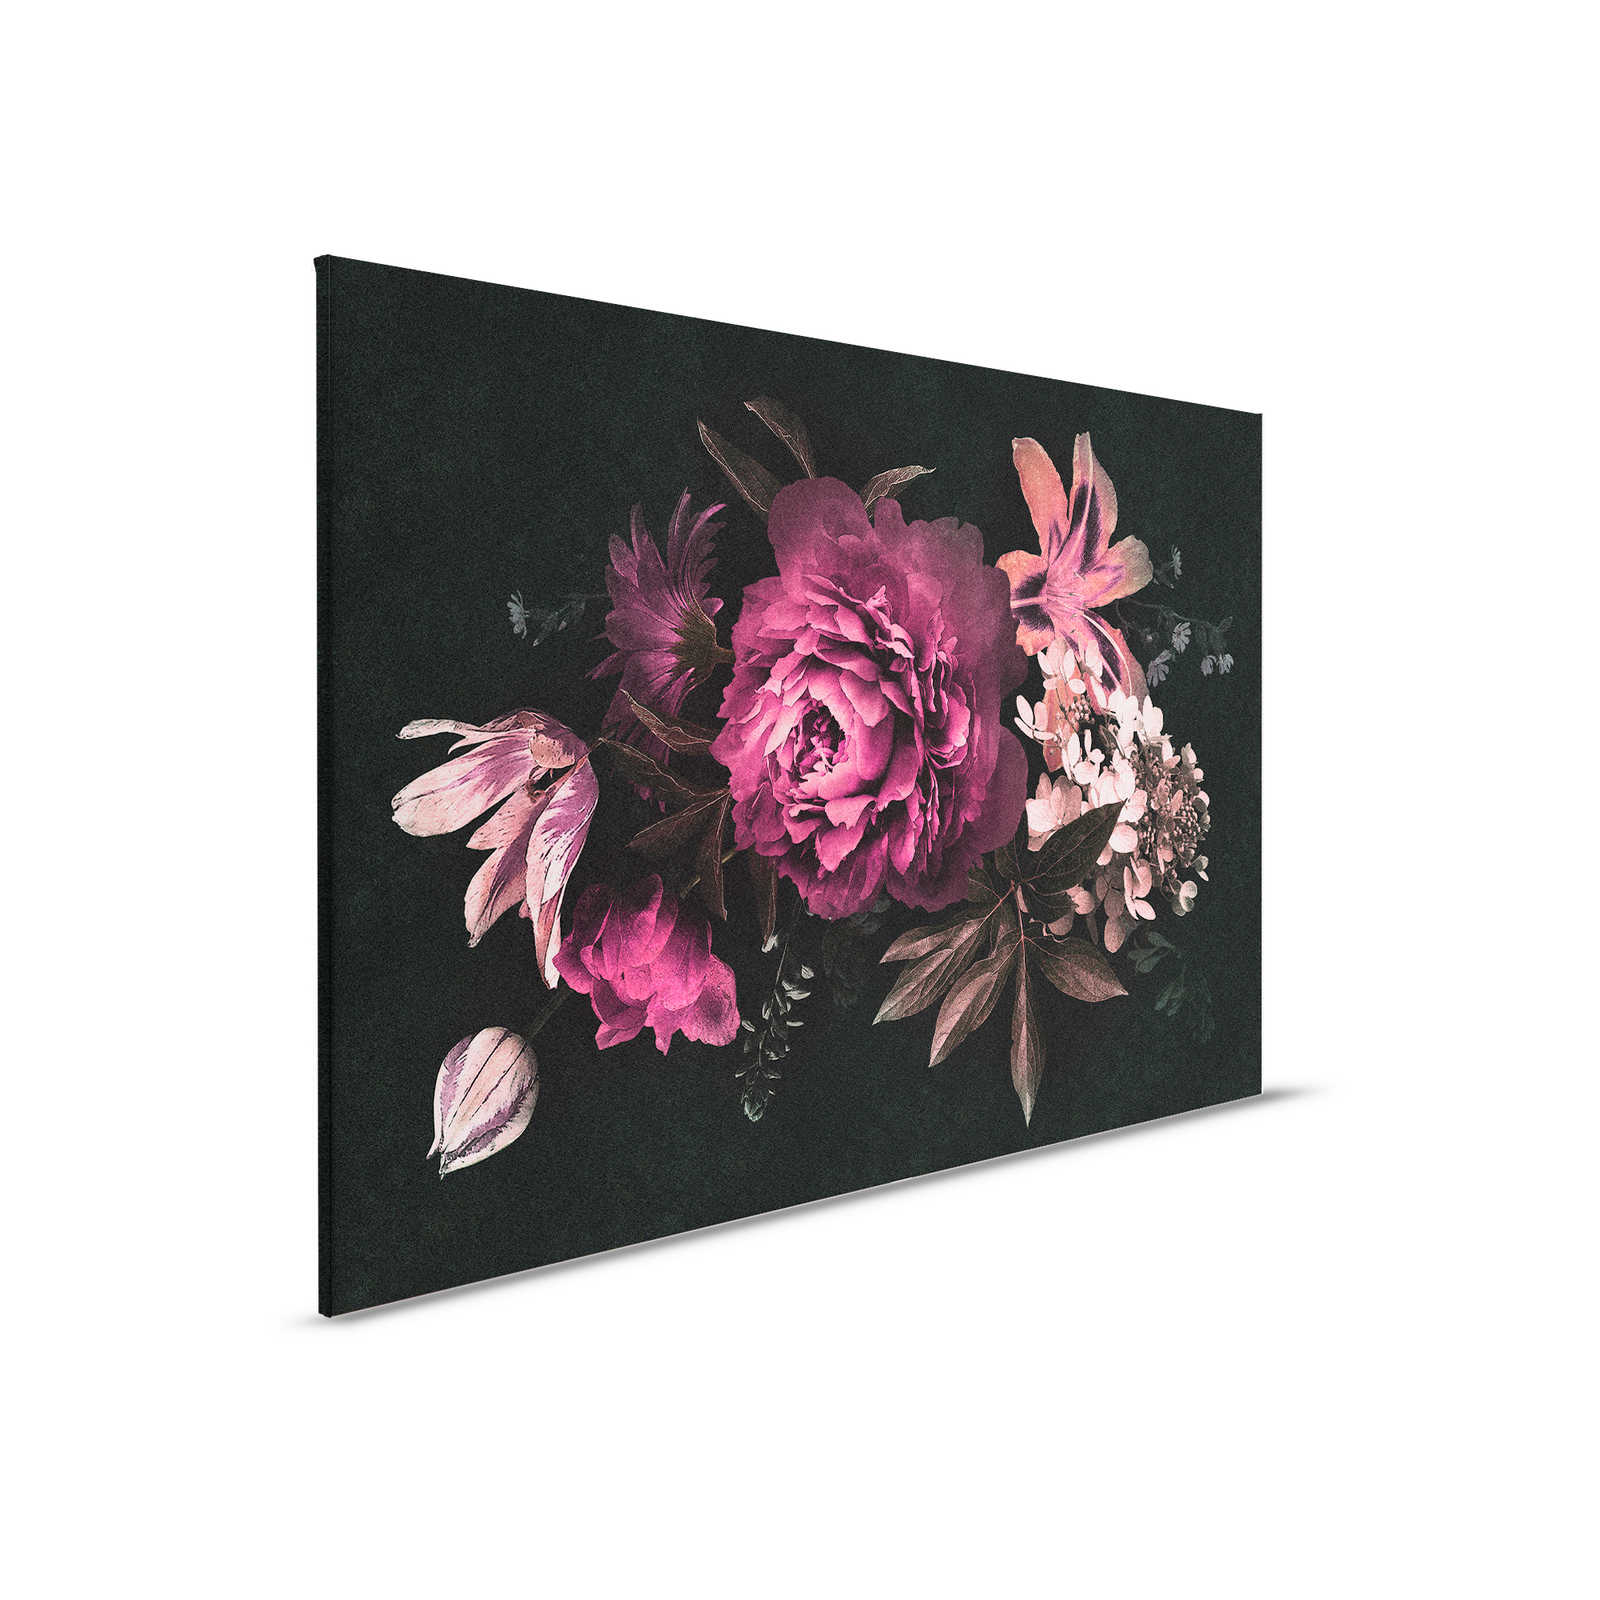         Drama queen 3 - Leinwandbild romantischer Blumenstrauß- Pappe Struktur – 0,90 m x 0,60 m
    